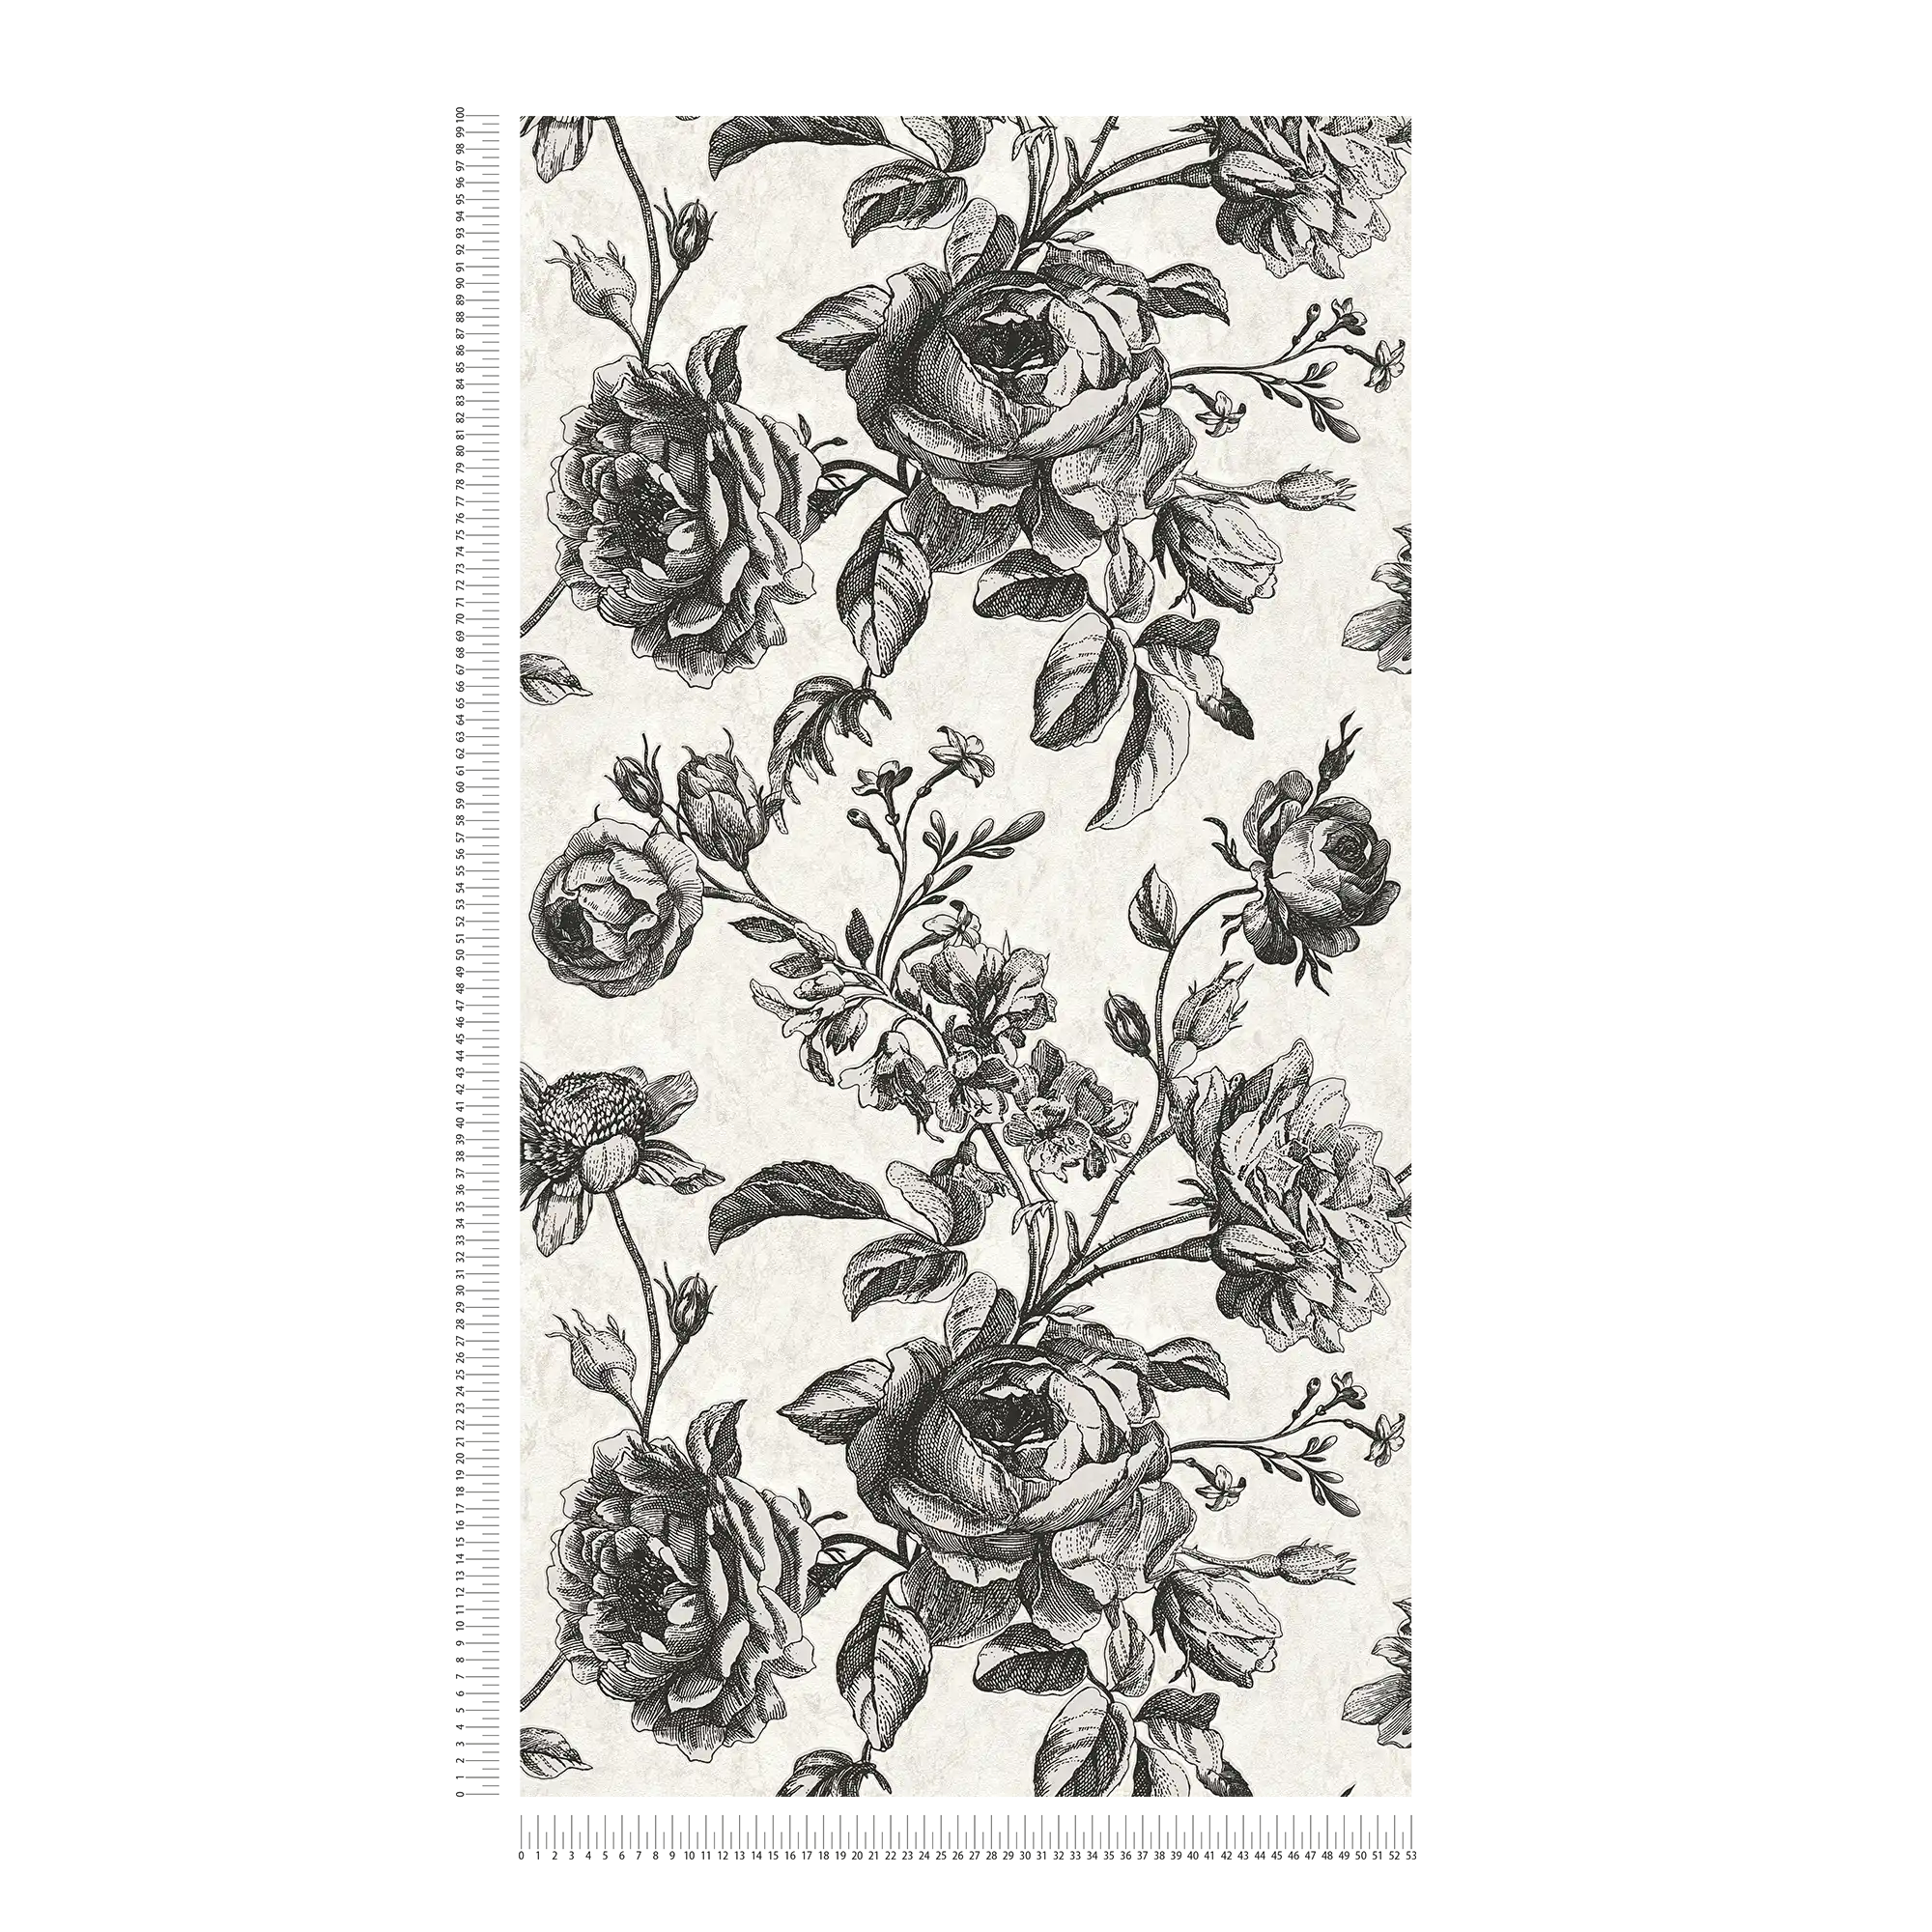             Zwart-crème behang rozen bloemenpatroon - wit, zwart, grijs
        